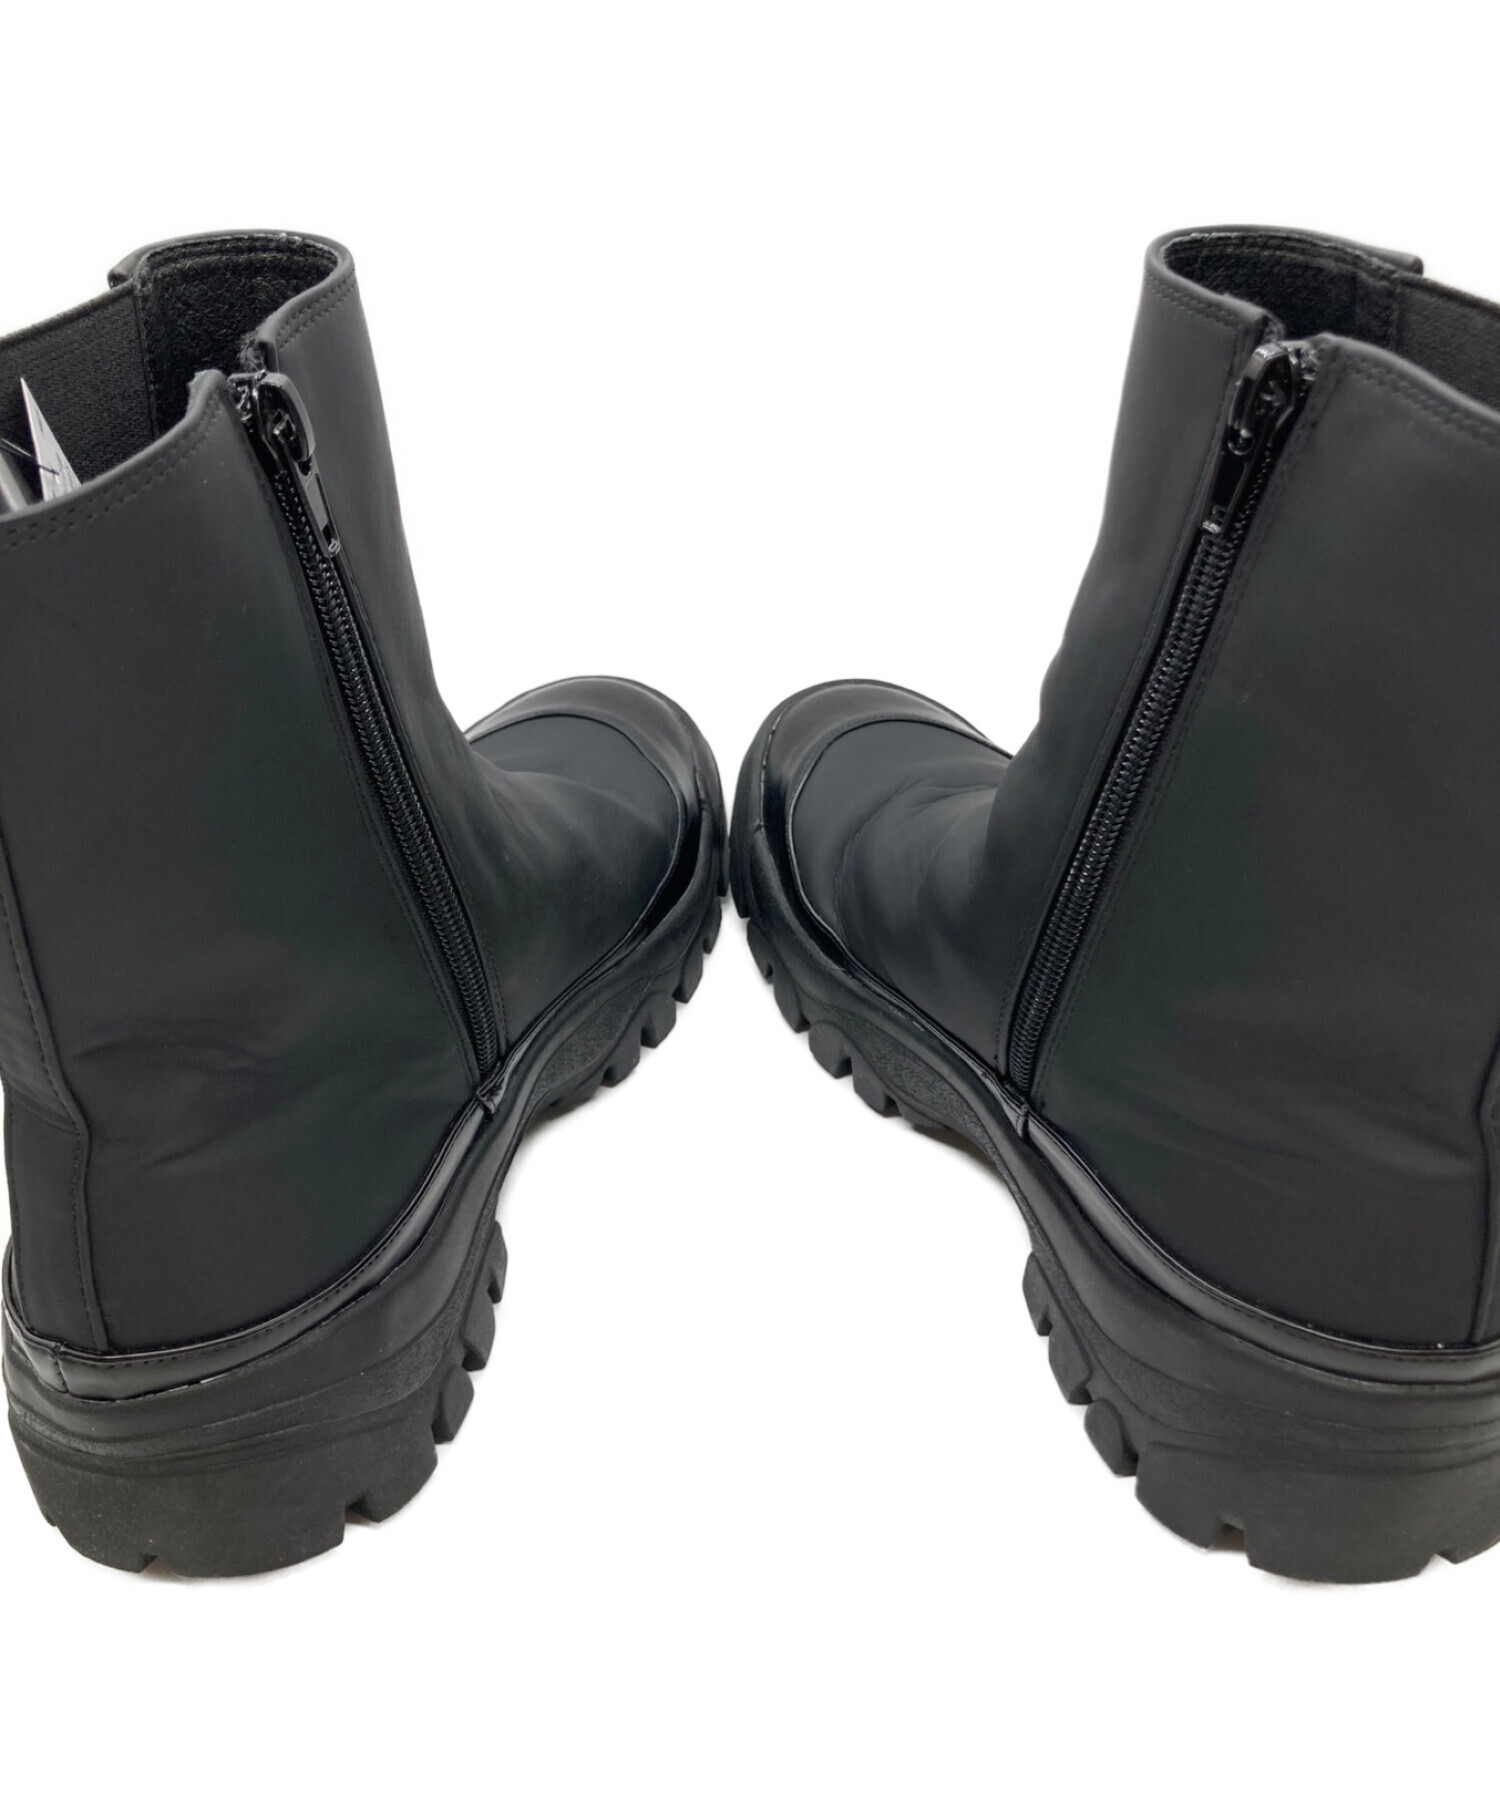 RANDEBOO (ランデブー) vibram (ビブラム) Vibram Chelsea boots / アンクルハイブーツ ブラック サイズ:L